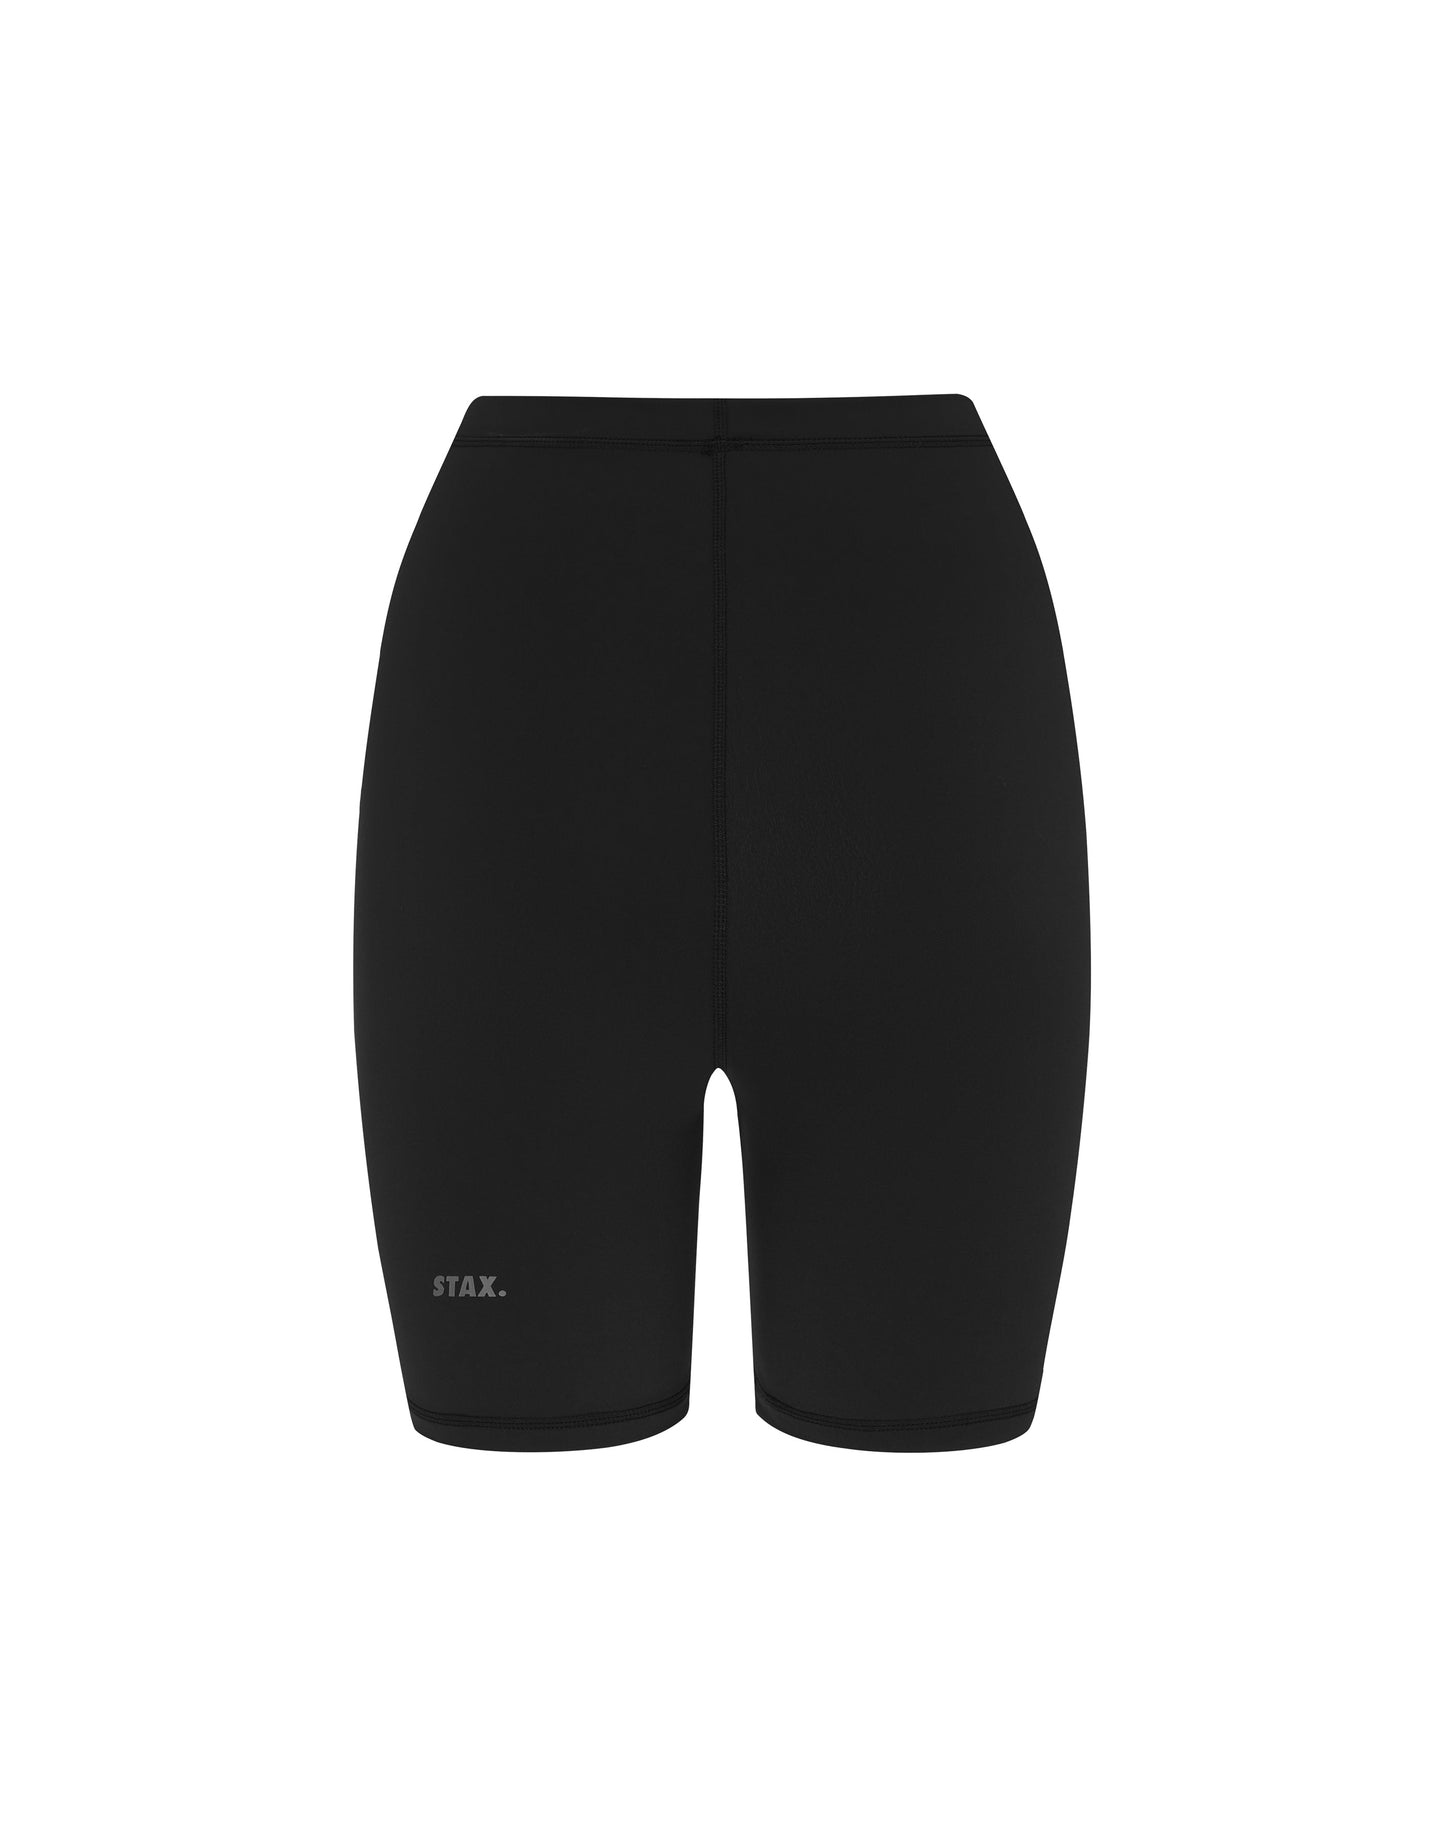 STAX. AW Bike Shorts - Black (Boa)